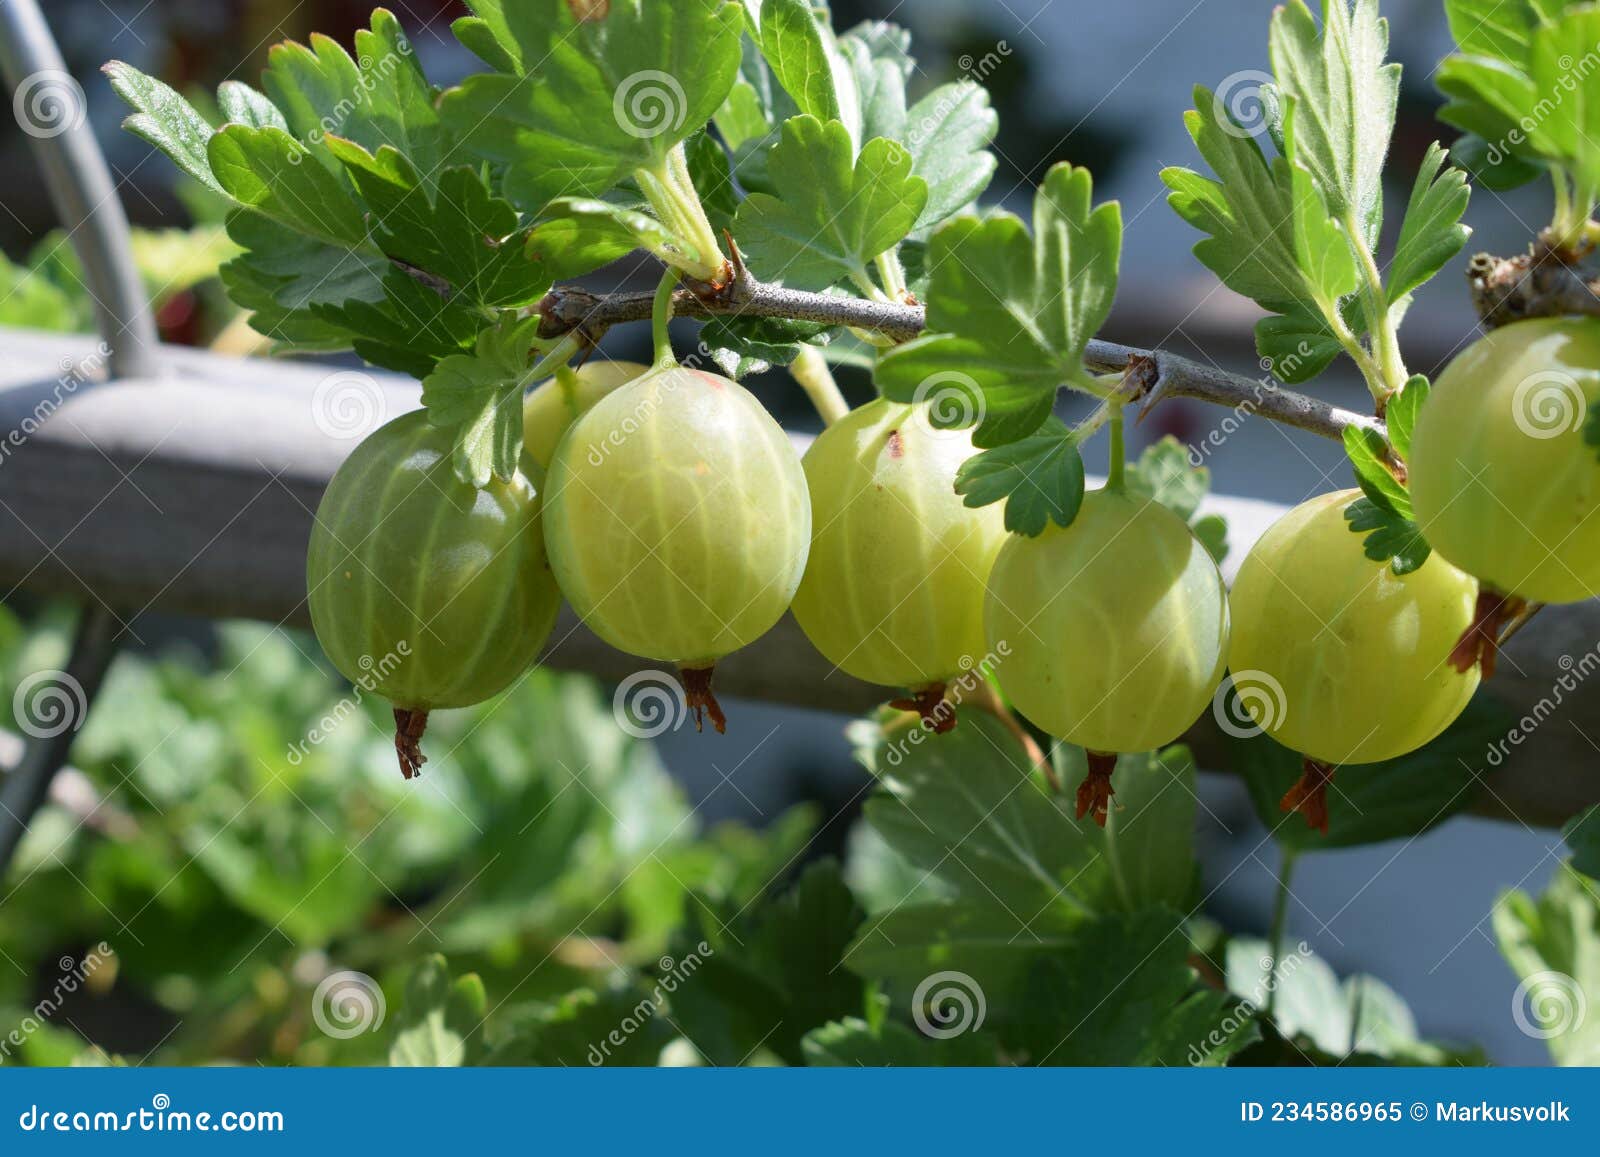 在醋栗灌木丛分支的新鲜的鹅莓 鹅莓 库存图片. 图片 包括有 本质, 绿色, 增长, 关闭, 健康, 特写镜头 - 127207403